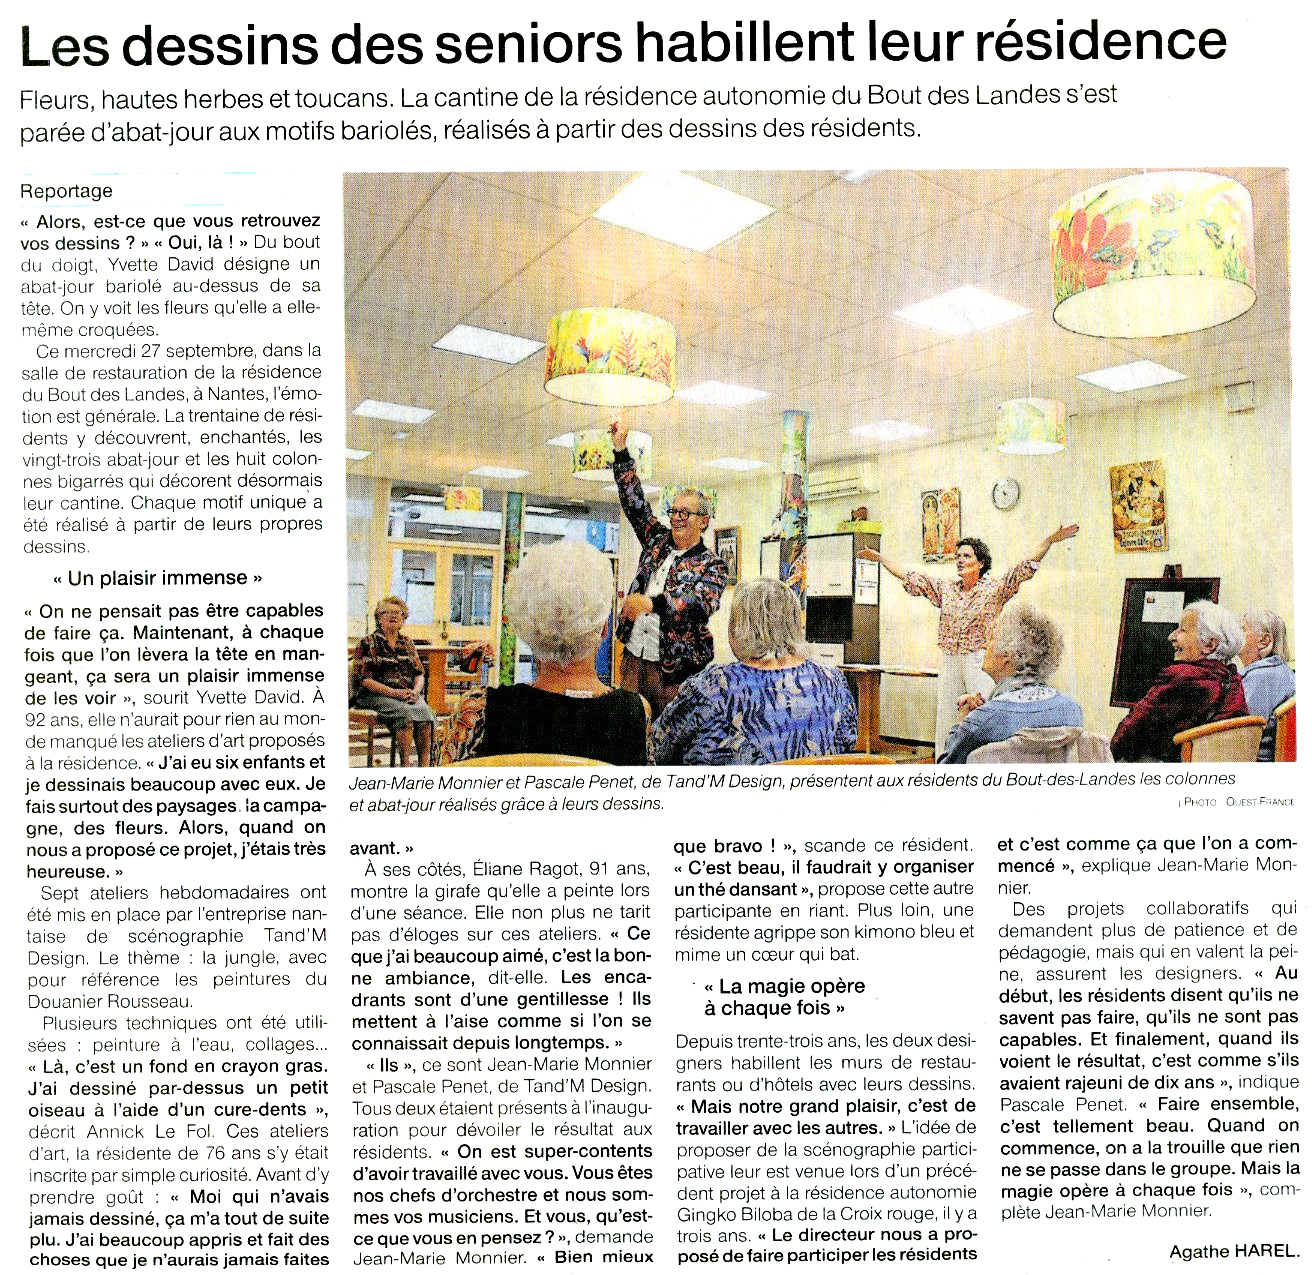 Visuel de l'article de presse publié le 06 octobre par Ouest France.